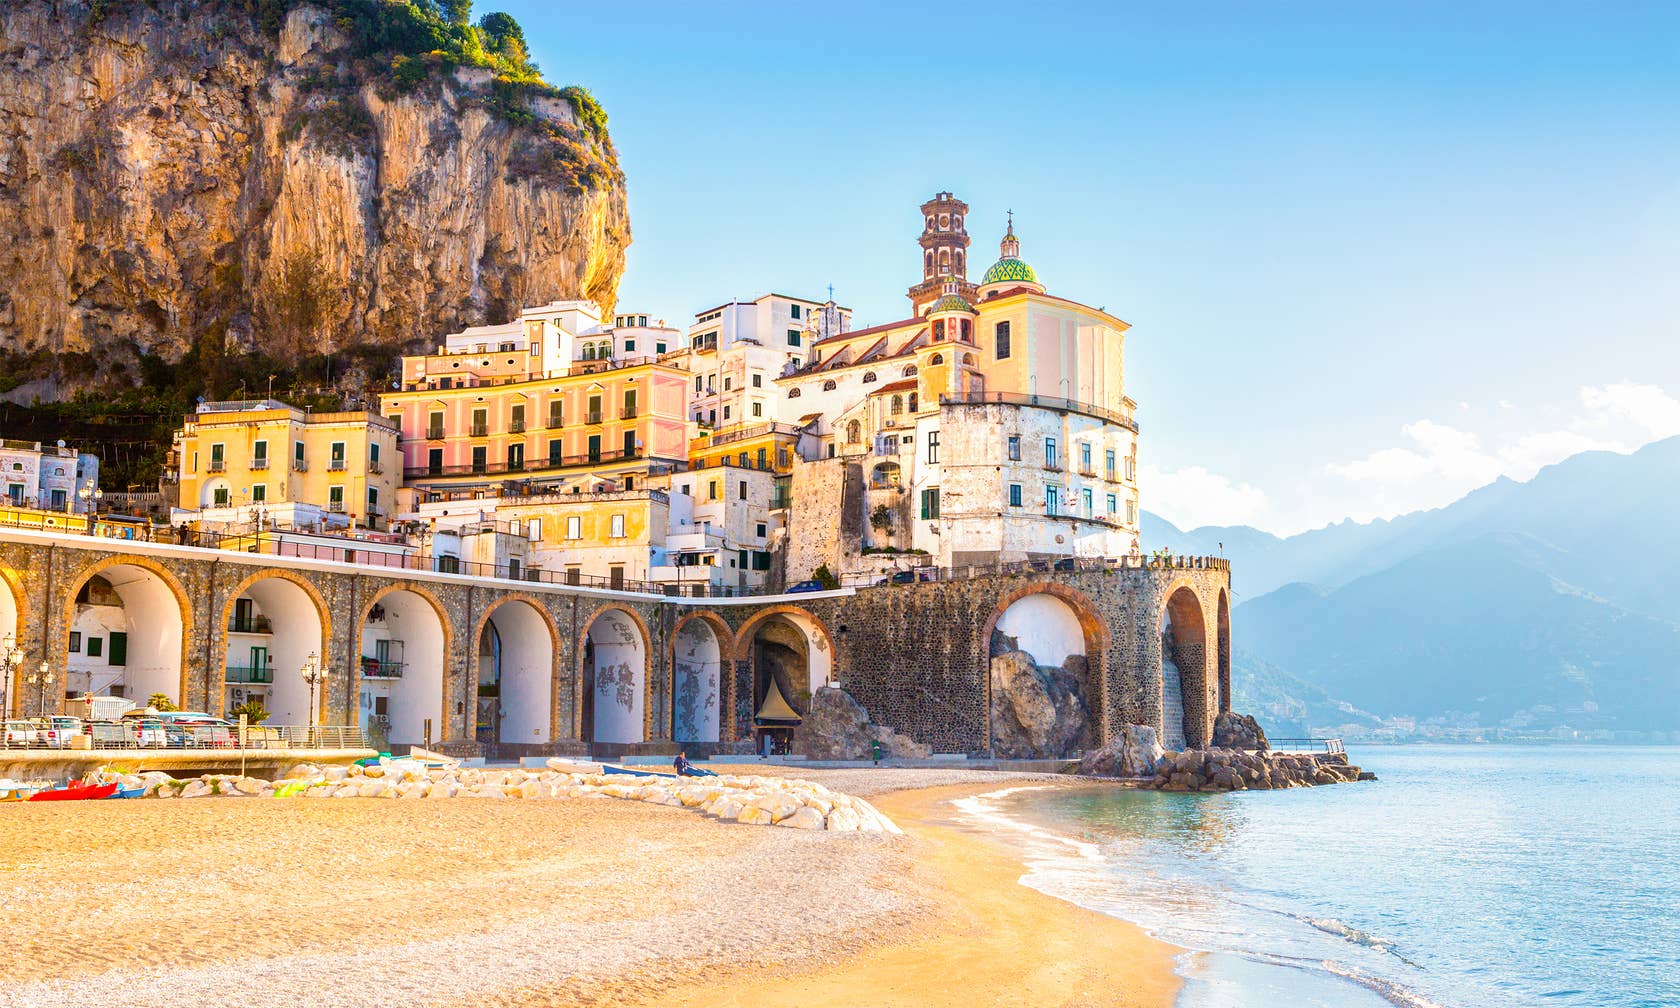 Positano में छुट्टियाँ बिताने के लिए किराए की जगहें